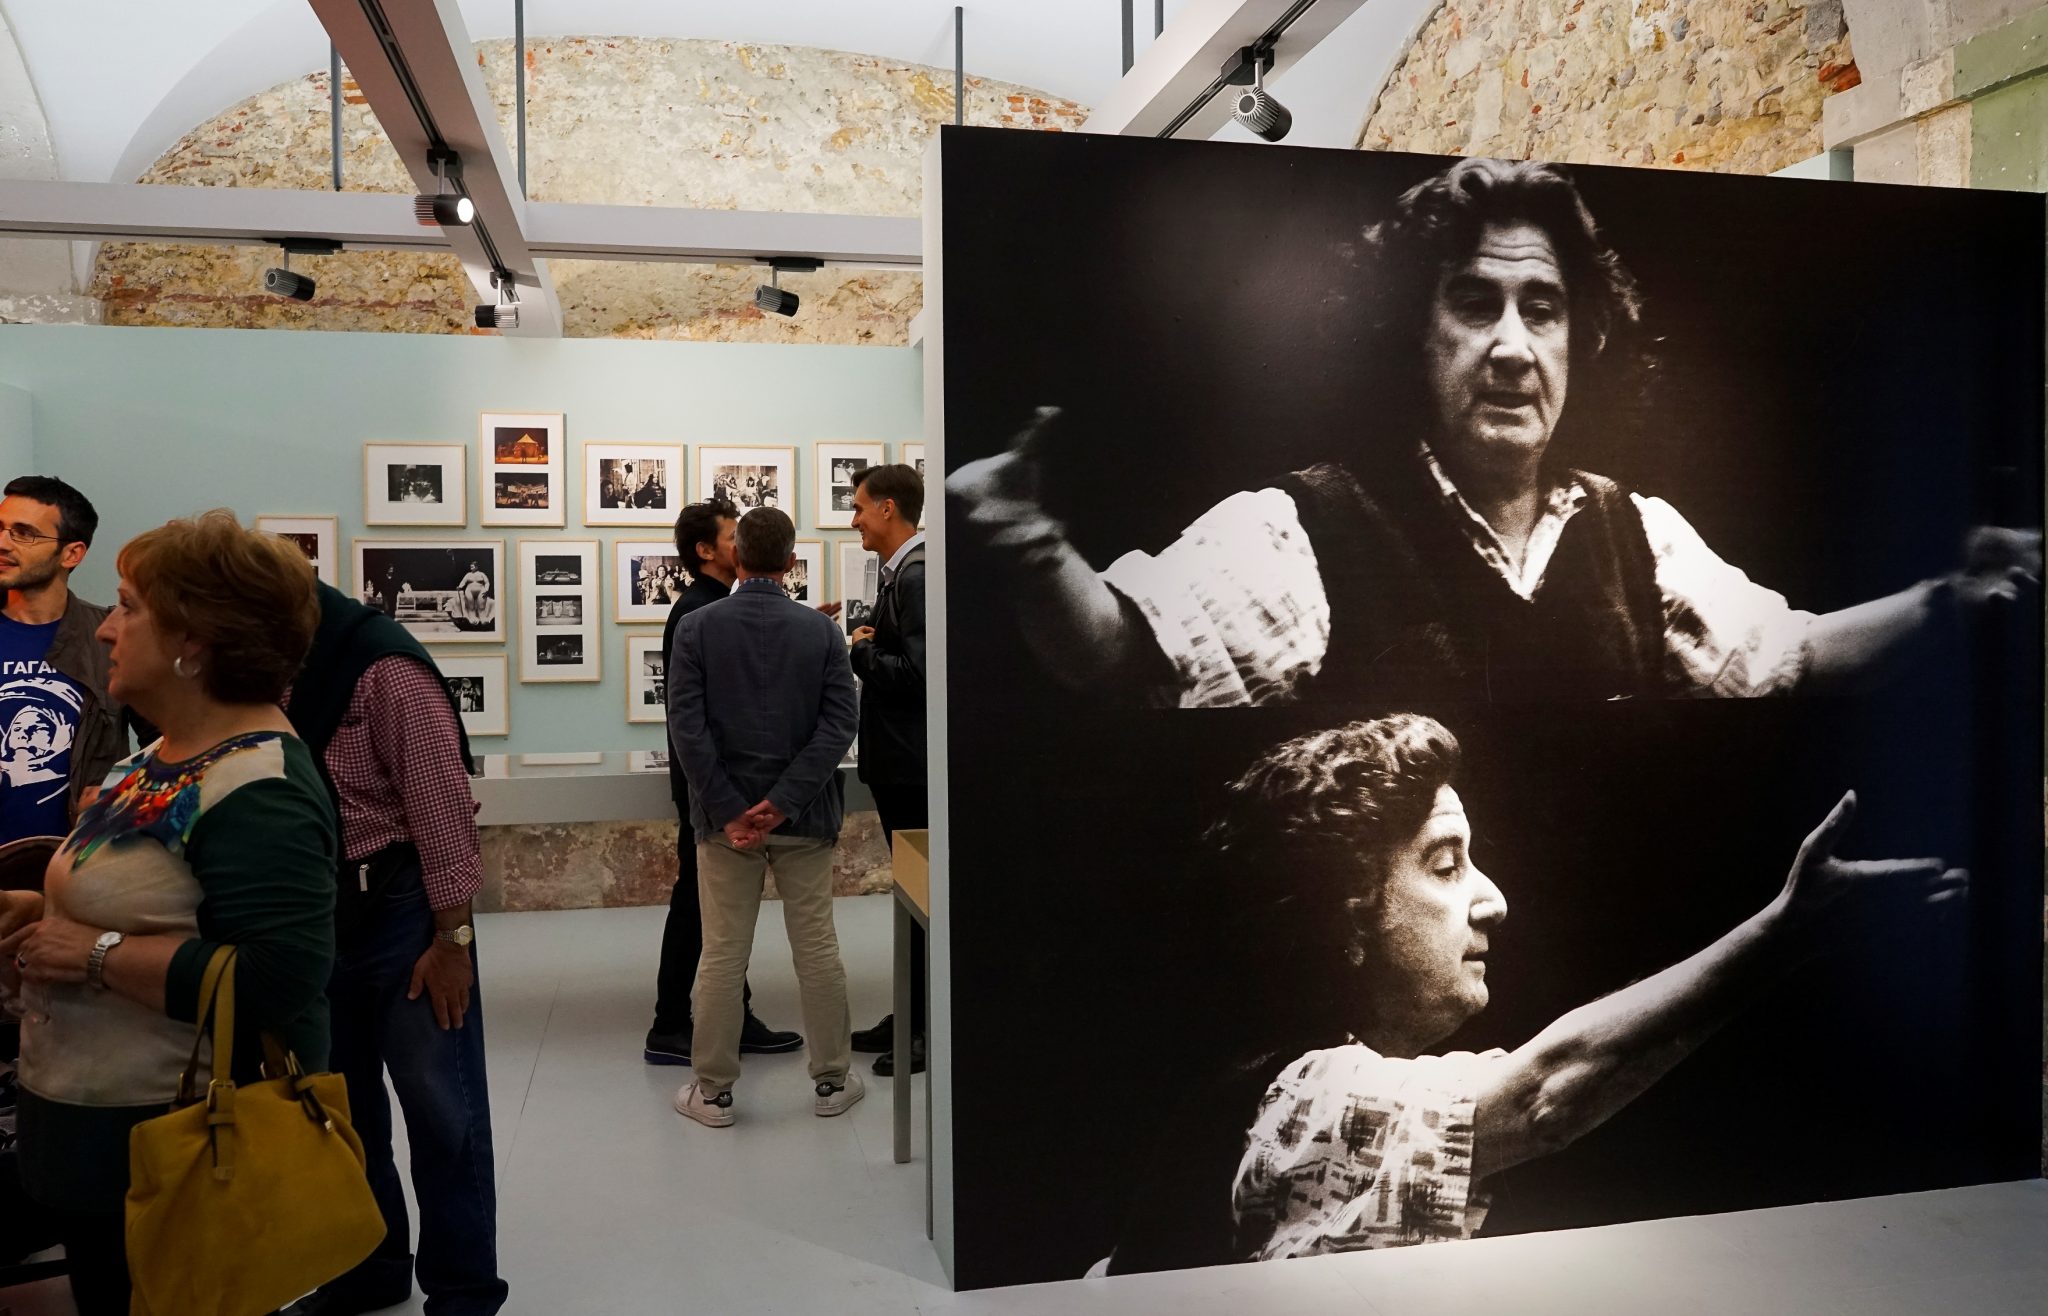 Algumas pessoas, em pé, pontuam uma exposição de fotografias com uma imagem de grande formato, a preto e branco, em destaque no lado direito.